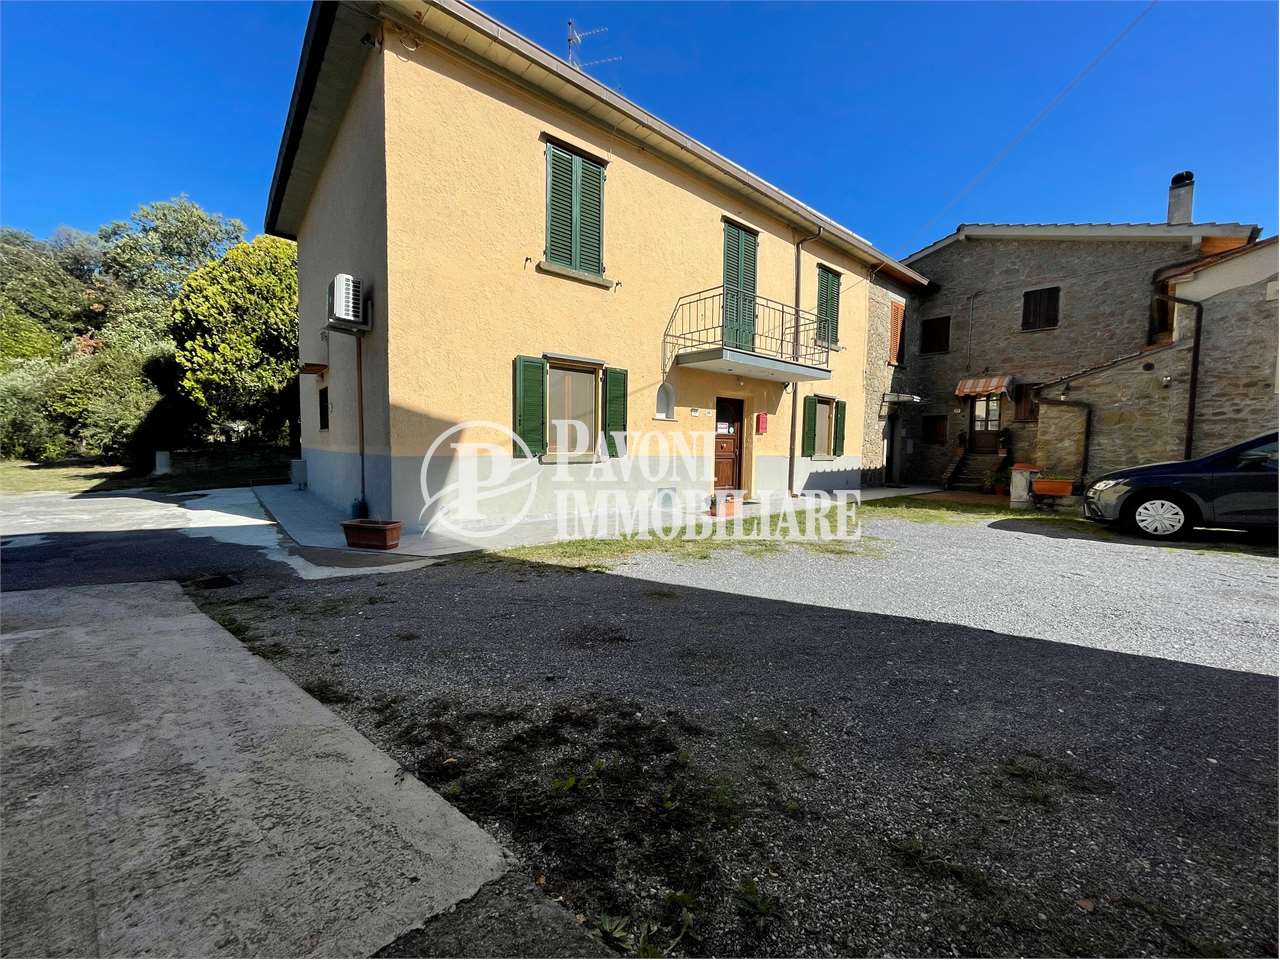 Appartamento in vendita a Lamporecchio, 8 locali, prezzo € 270.000 | PortaleAgenzieImmobiliari.it